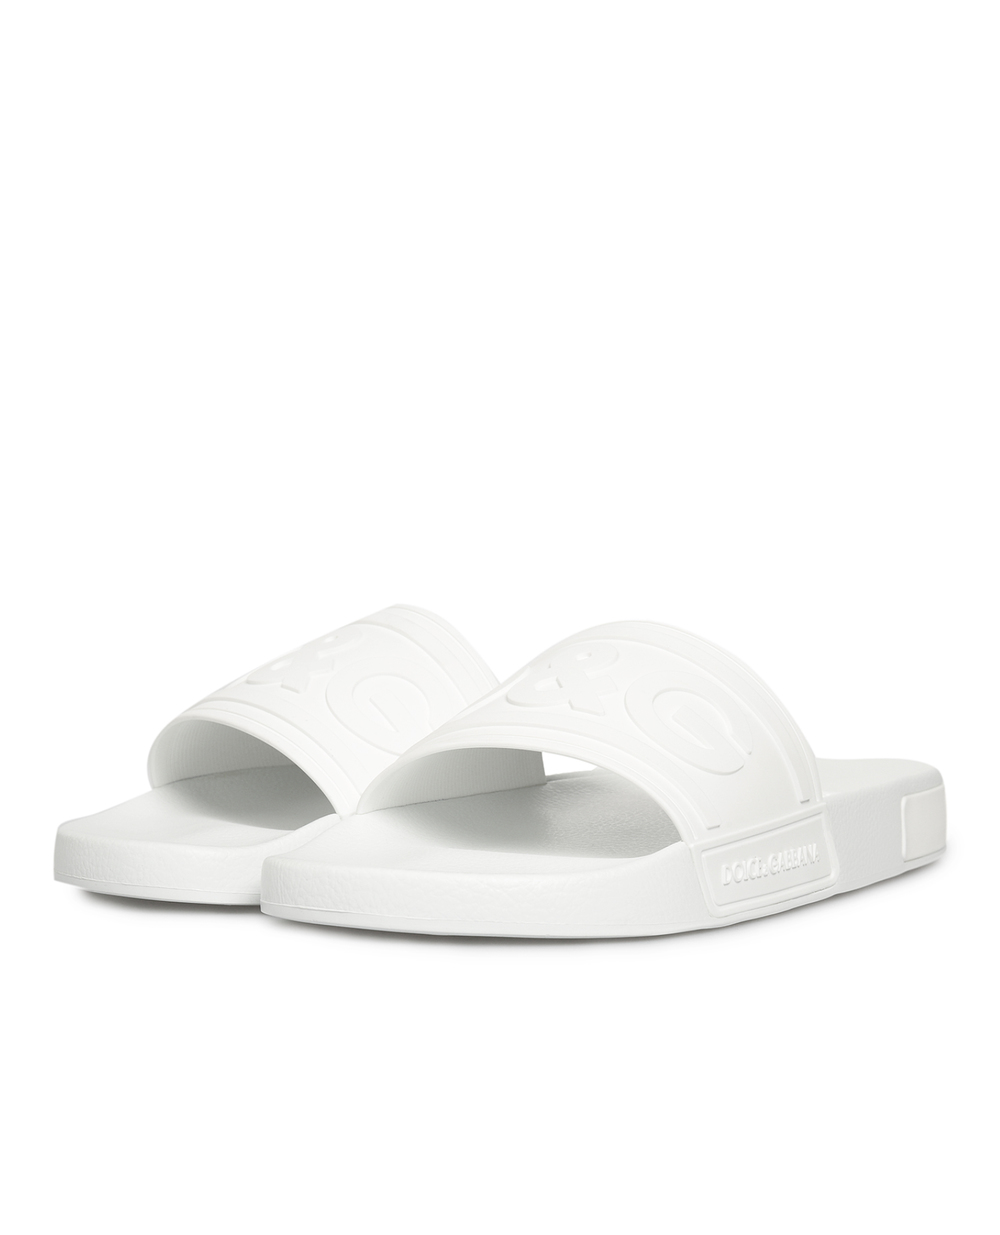 Слайдеры Dolce&Gabbana CS1786-AX389, белый цвет • Купить в интернет-магазине Kameron